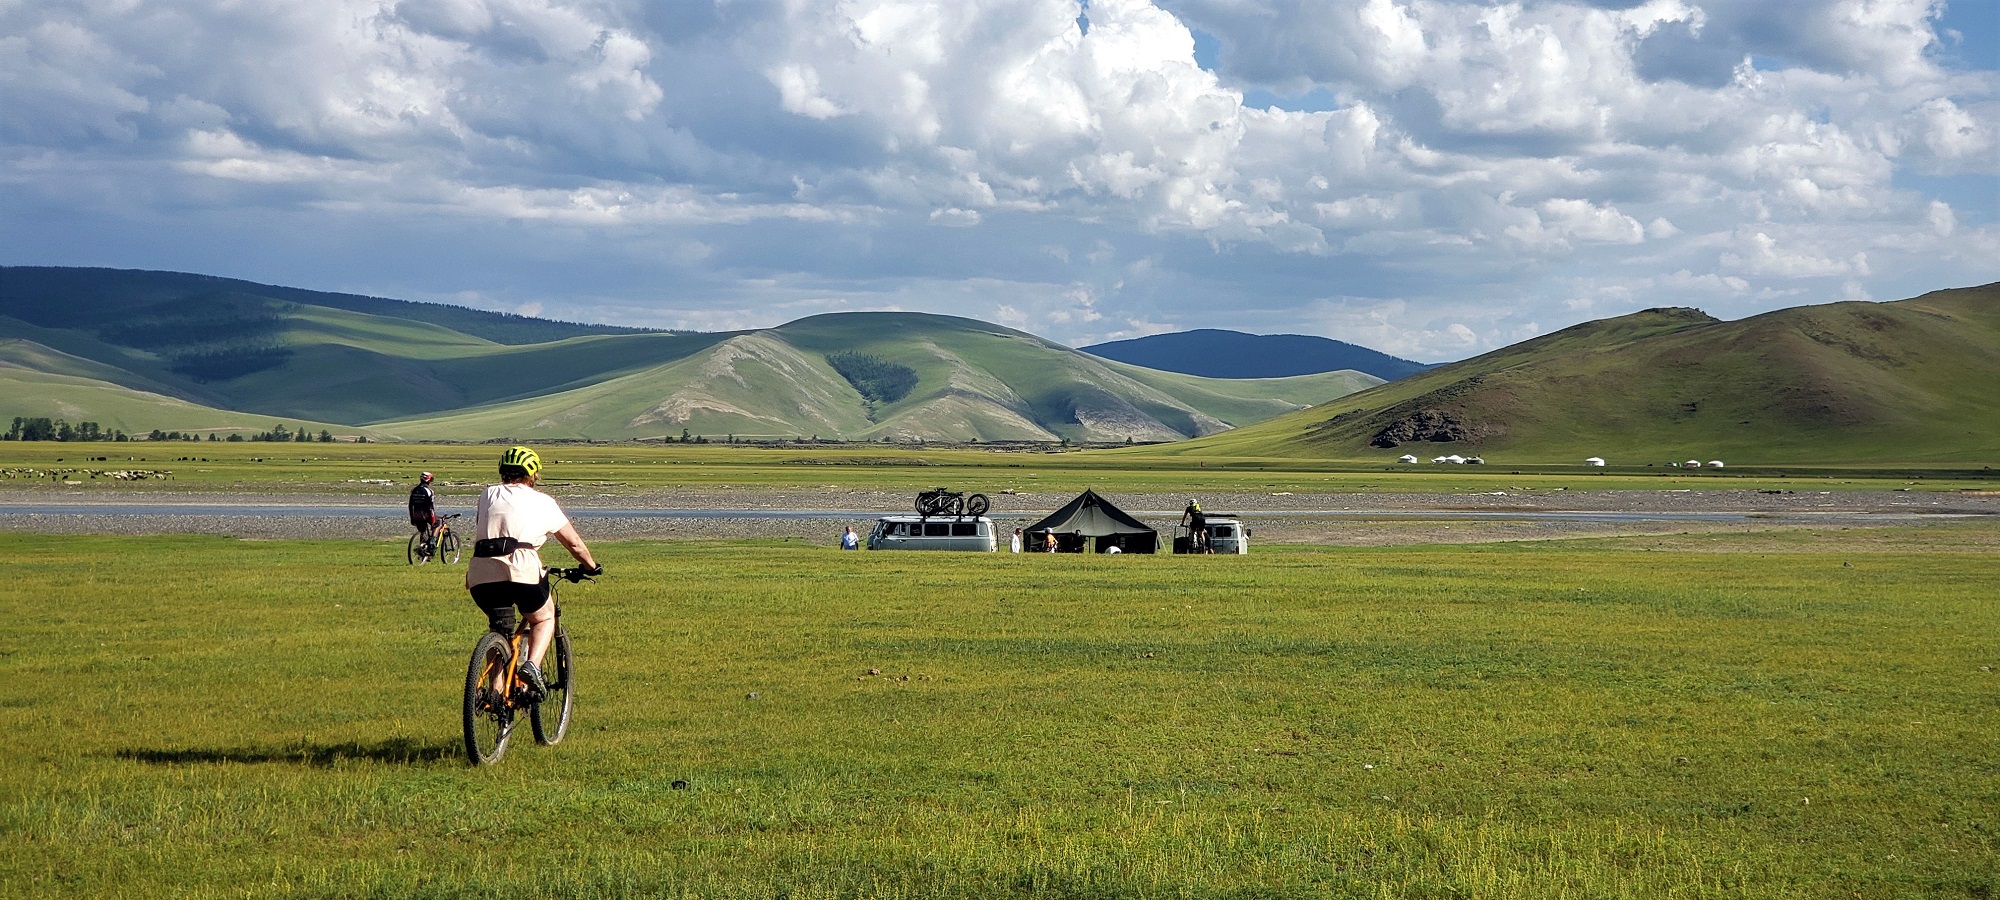 Cycling Mongolia